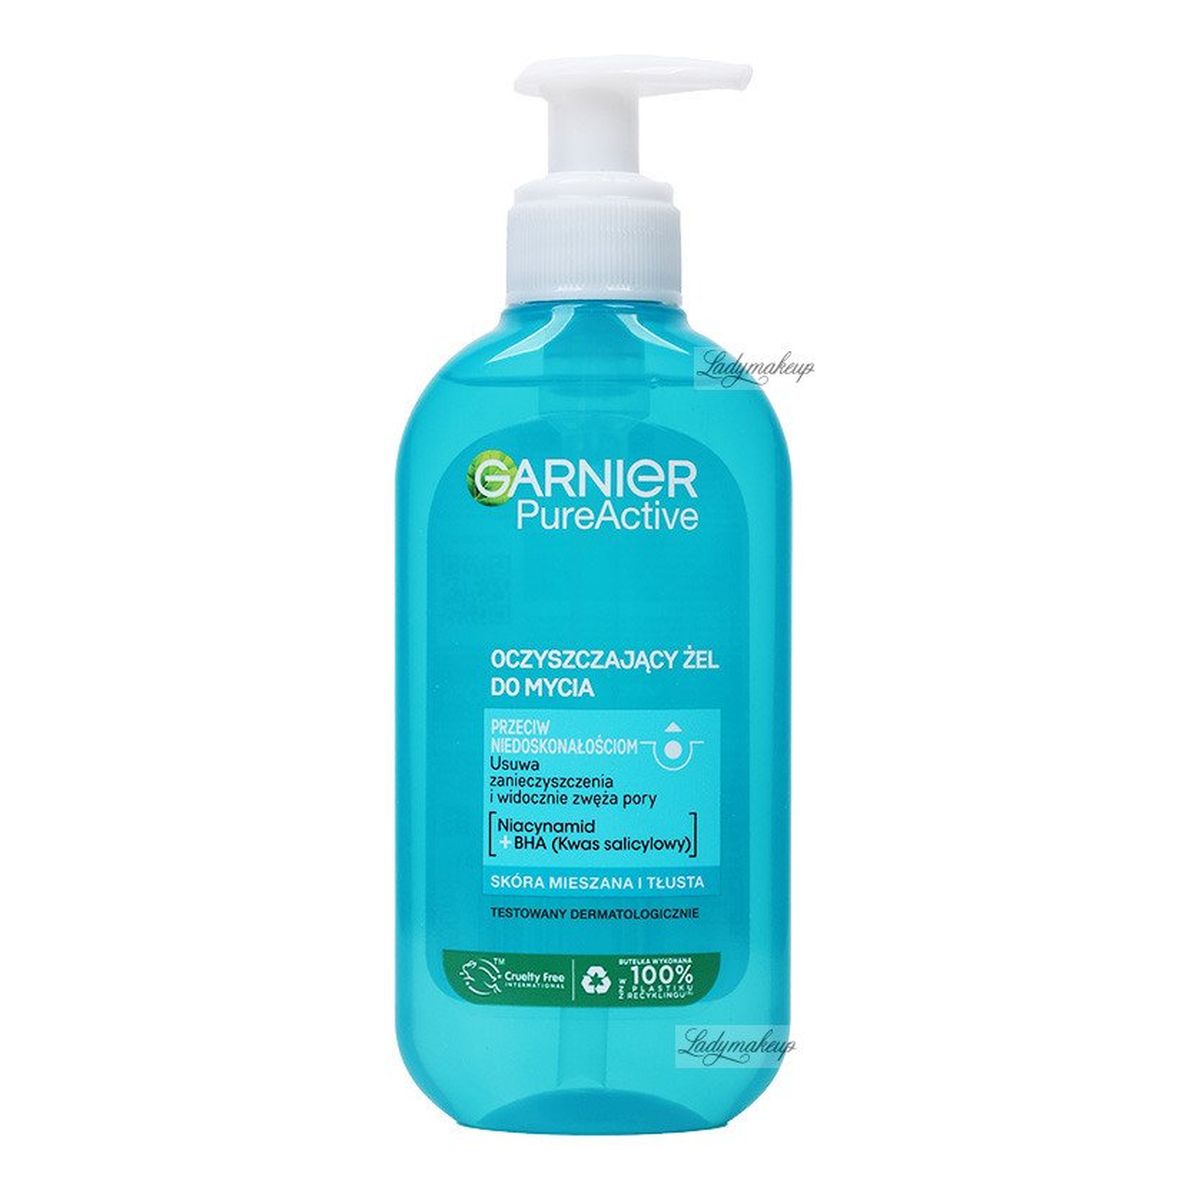 Garnier Czysta Skóra Skin Naturals Żel Oczyszczający z Pompką 200ml